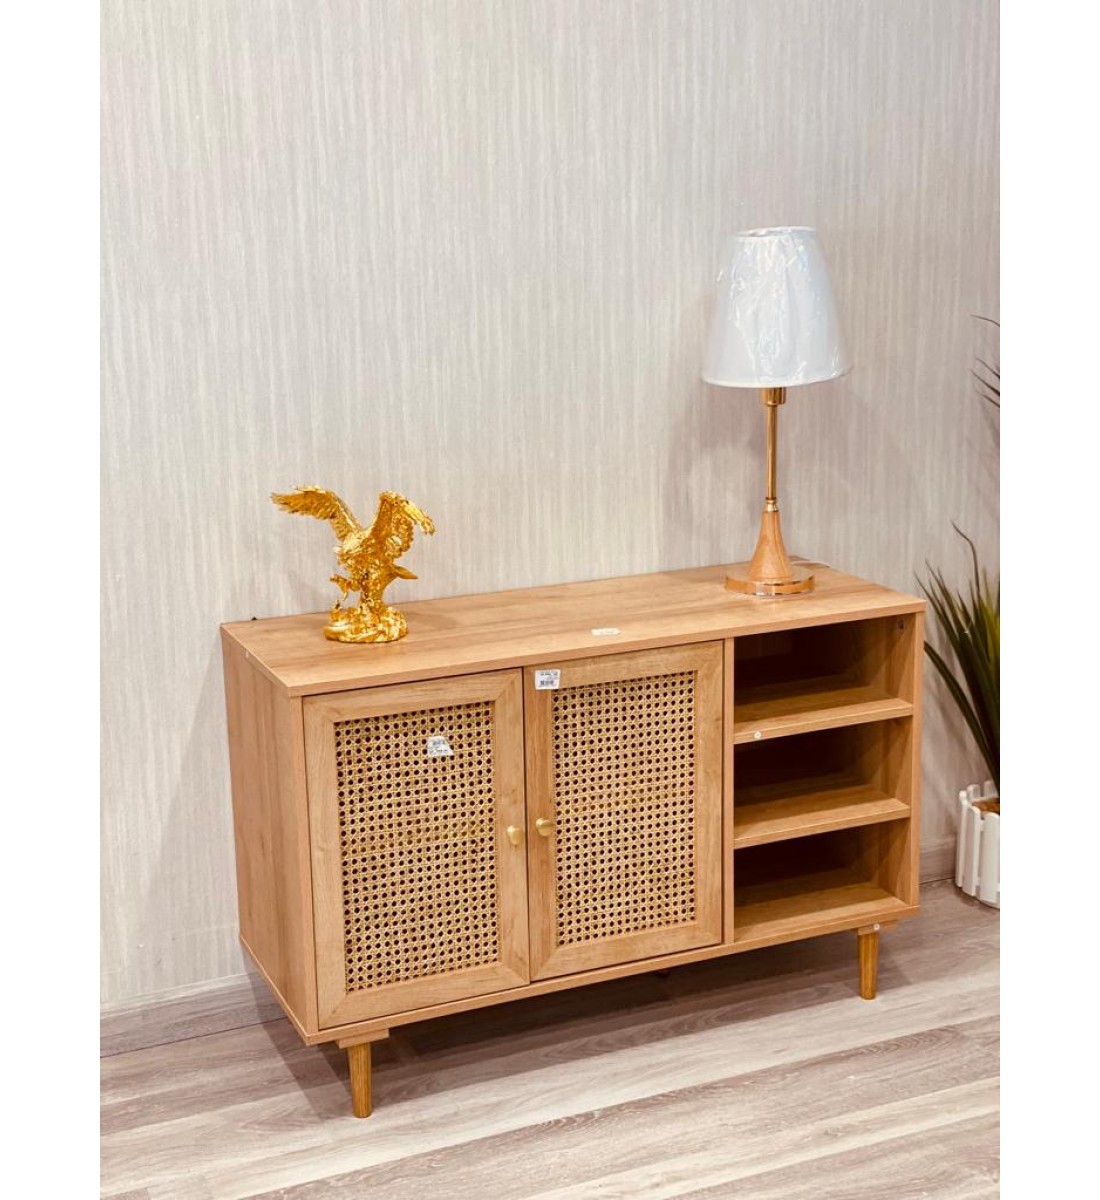 Wooden drawer cupboard, 100 * 65 cm